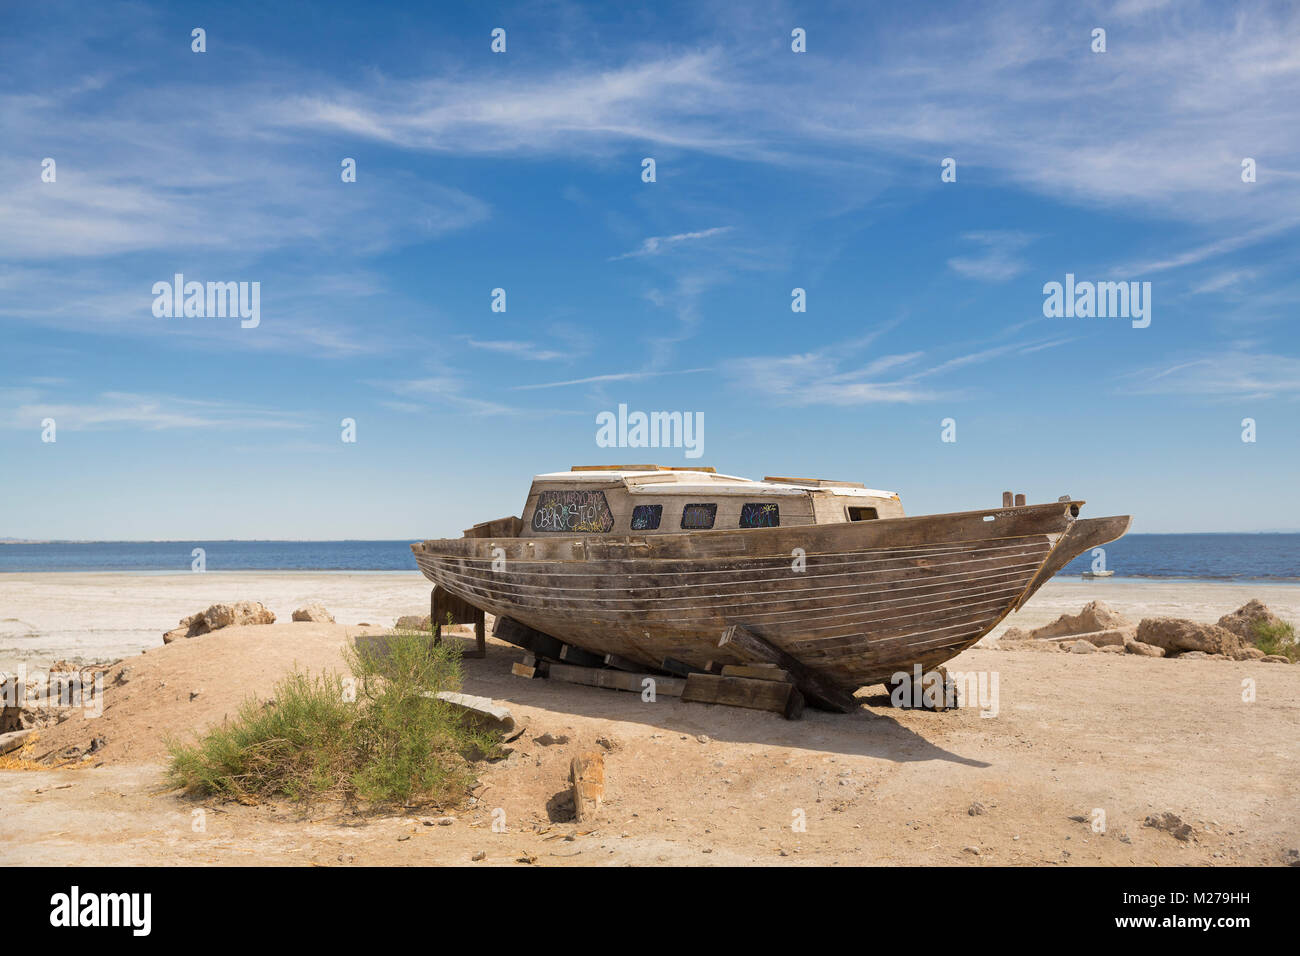 Abandoned Boat at Bomby Beach, The Salton Sea, California Stock Photo